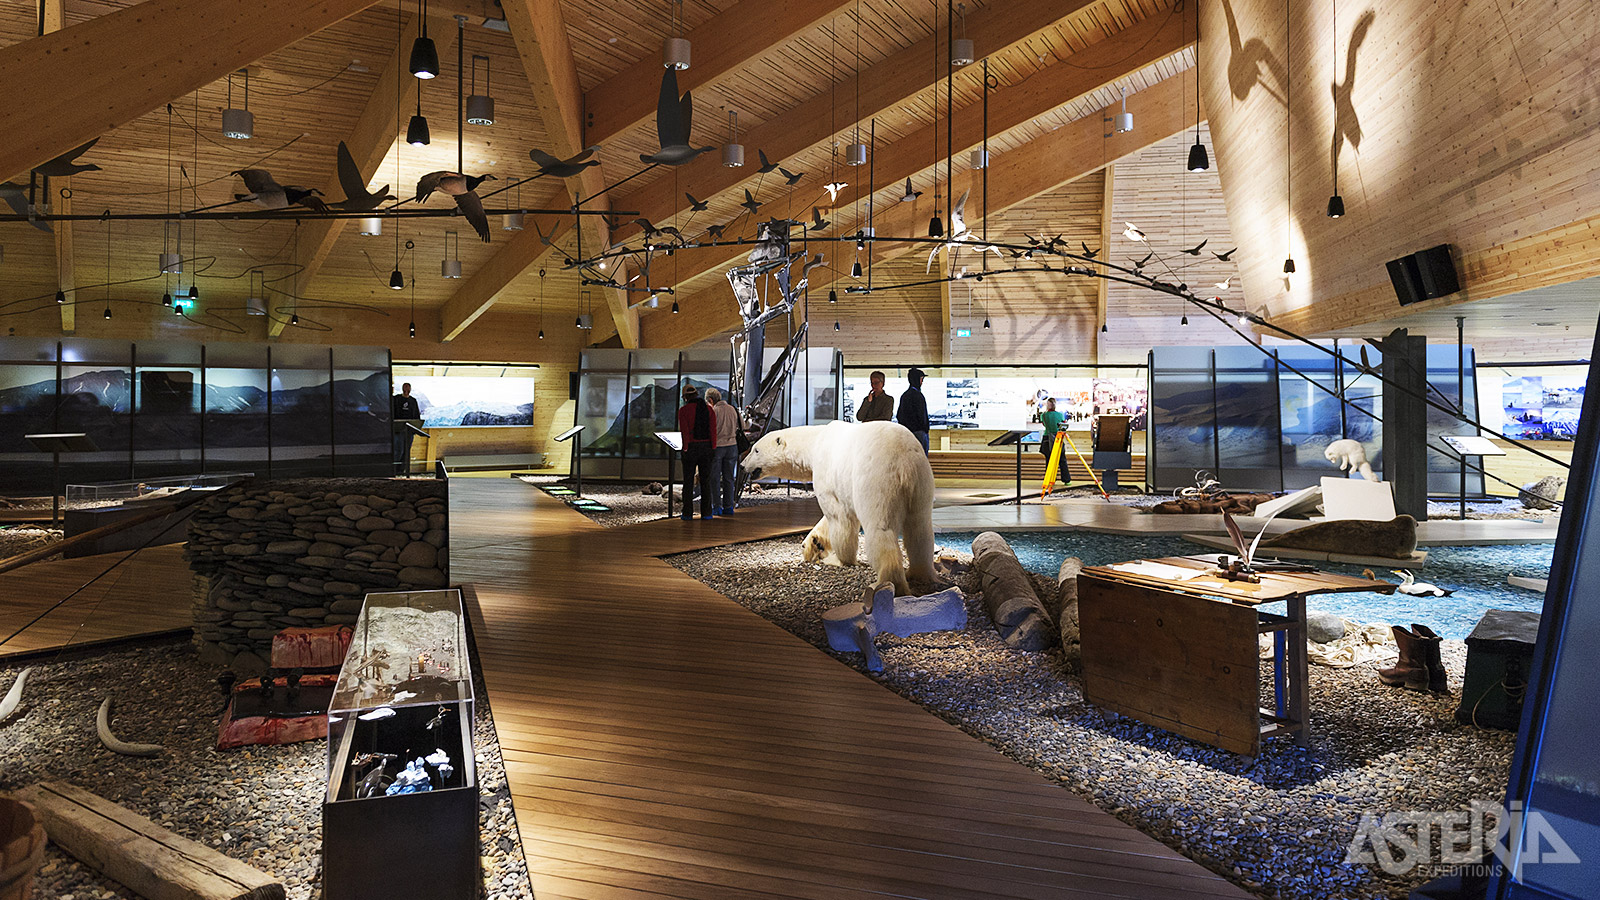 De collectie van het Svalbard Museum omvat meer dan 1.700 objecten, foto’s, archiefstukken, kaarten, tekeningen en boeken